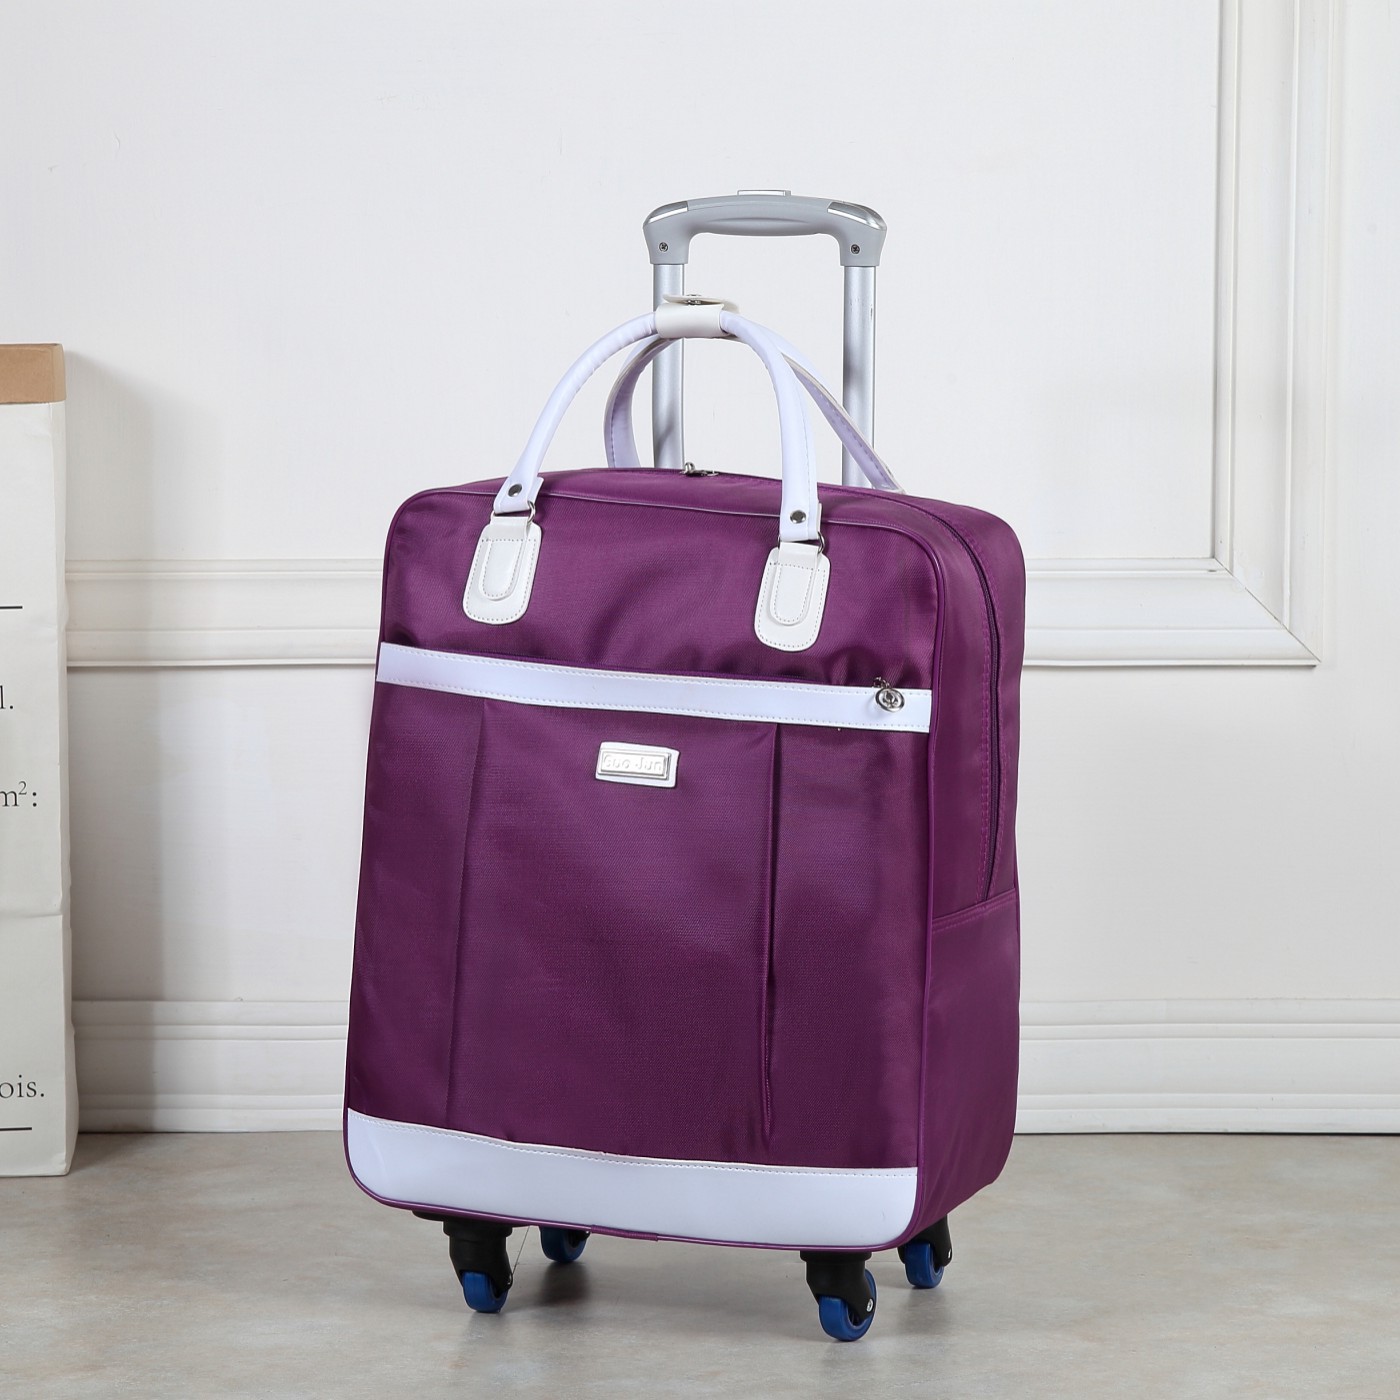 牛津布拉杆箱包短途出差旅行手提大包包旅游上登飞机行李袋防水小